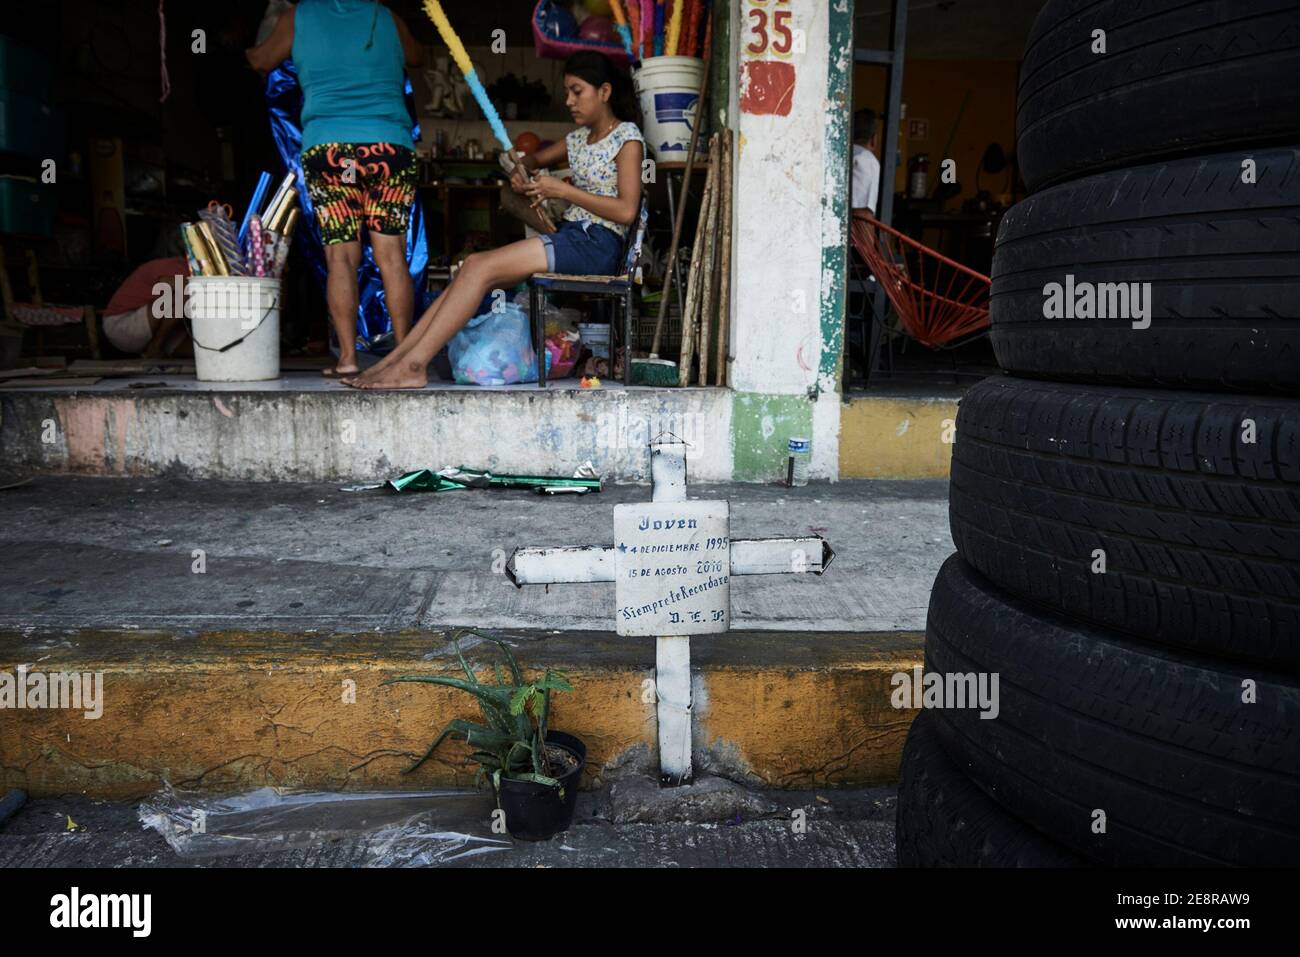 Un mémorial en bord de route, à l'extérieur d'un magasin local, d'une personne perdue à la suite de violences à Acapulco, Guerrero, Mexique.L'idée est que les croix sont placées là où la personne a été tuée afin que leur famille puisse venir et ' ramasser leur ombre ' ils croient que l'âme tombe au sol quand une personne est assassinée ainsi la famille viennent pour les ramasser.C'est un rituel catholique et après 9 jours, les croix sont destinées à être enlevées et emmenées à une église. Banque D'Images